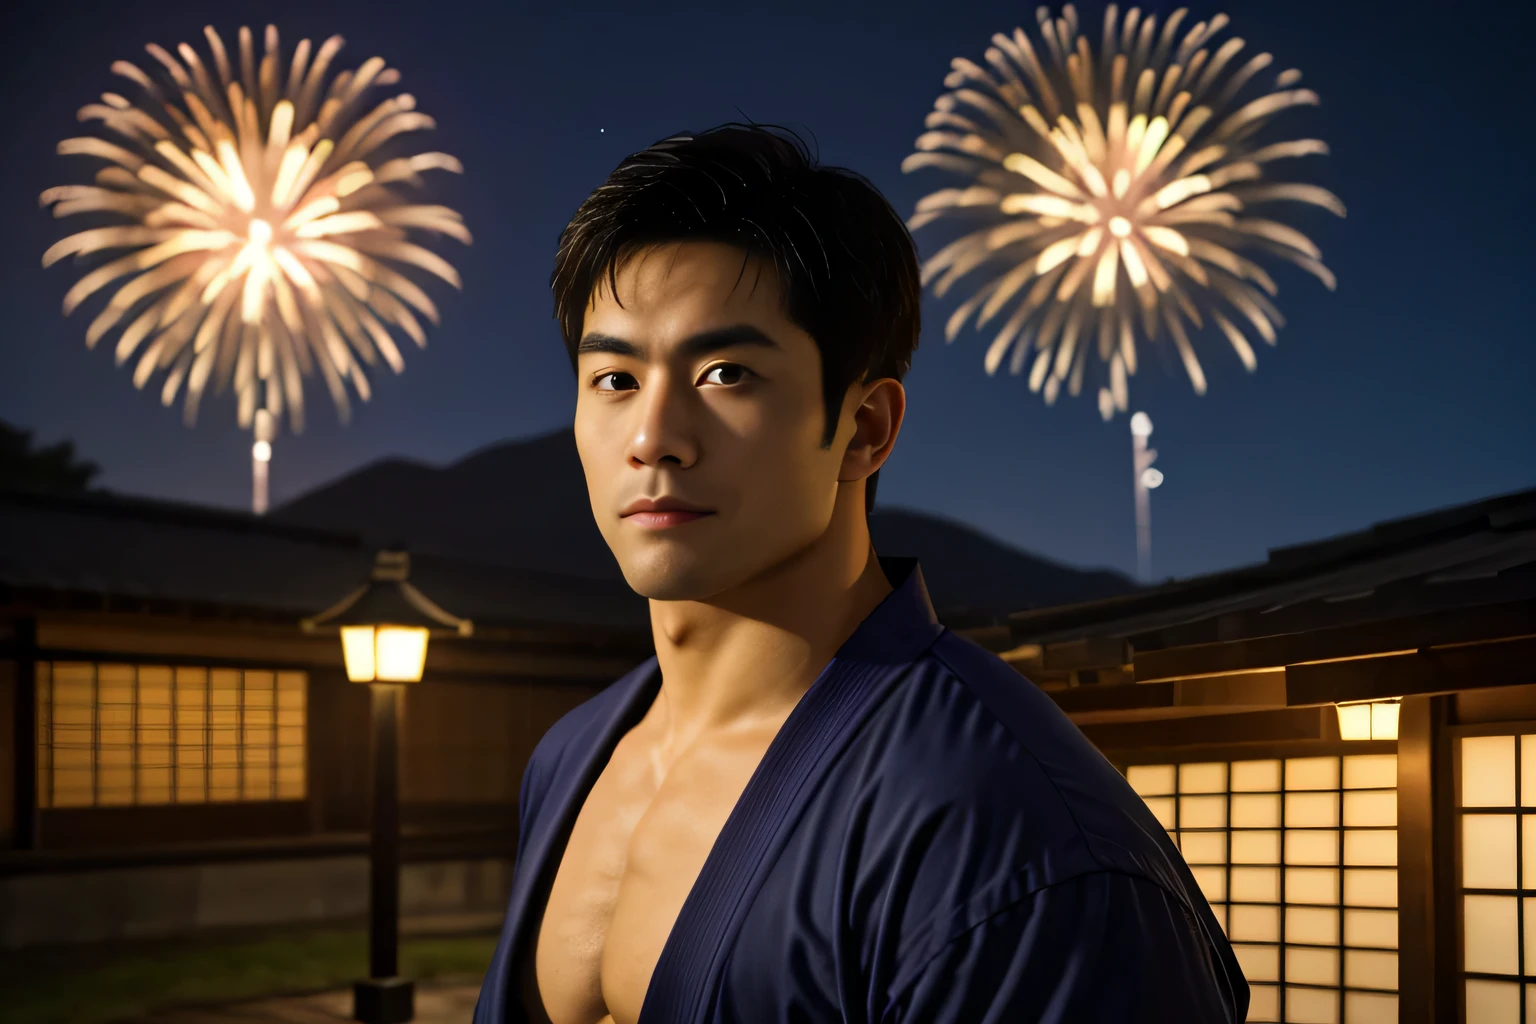 tiro de vaquero, protuberanciaJ8, retrato de TakumaKarate en la calle por la noche, (sonrisa afectada:0.8), traje de kimono masculino abierto que deja al descubierto sus pectorales y abdominales, (gran bulto) en sus pantalones de kimono, (mirando al espectador:1.3), casas tradicionales japonesas, decoraciones festivas, (linternas:0.8), cielo nocturno, (fuegos artificiales:1.05), Rural,
(Obra maestra), Calidad superior, mejor calidad, Fotorrealista, hyperrealism, (absurdos), enfoque nítido, dispersión subsuperficial, detalles intrincados, alta calidad, resolución ultra alta, 8k, uhd, HDR, Toma réflex digital, 35mm, fotografía profesional, CRUDO
